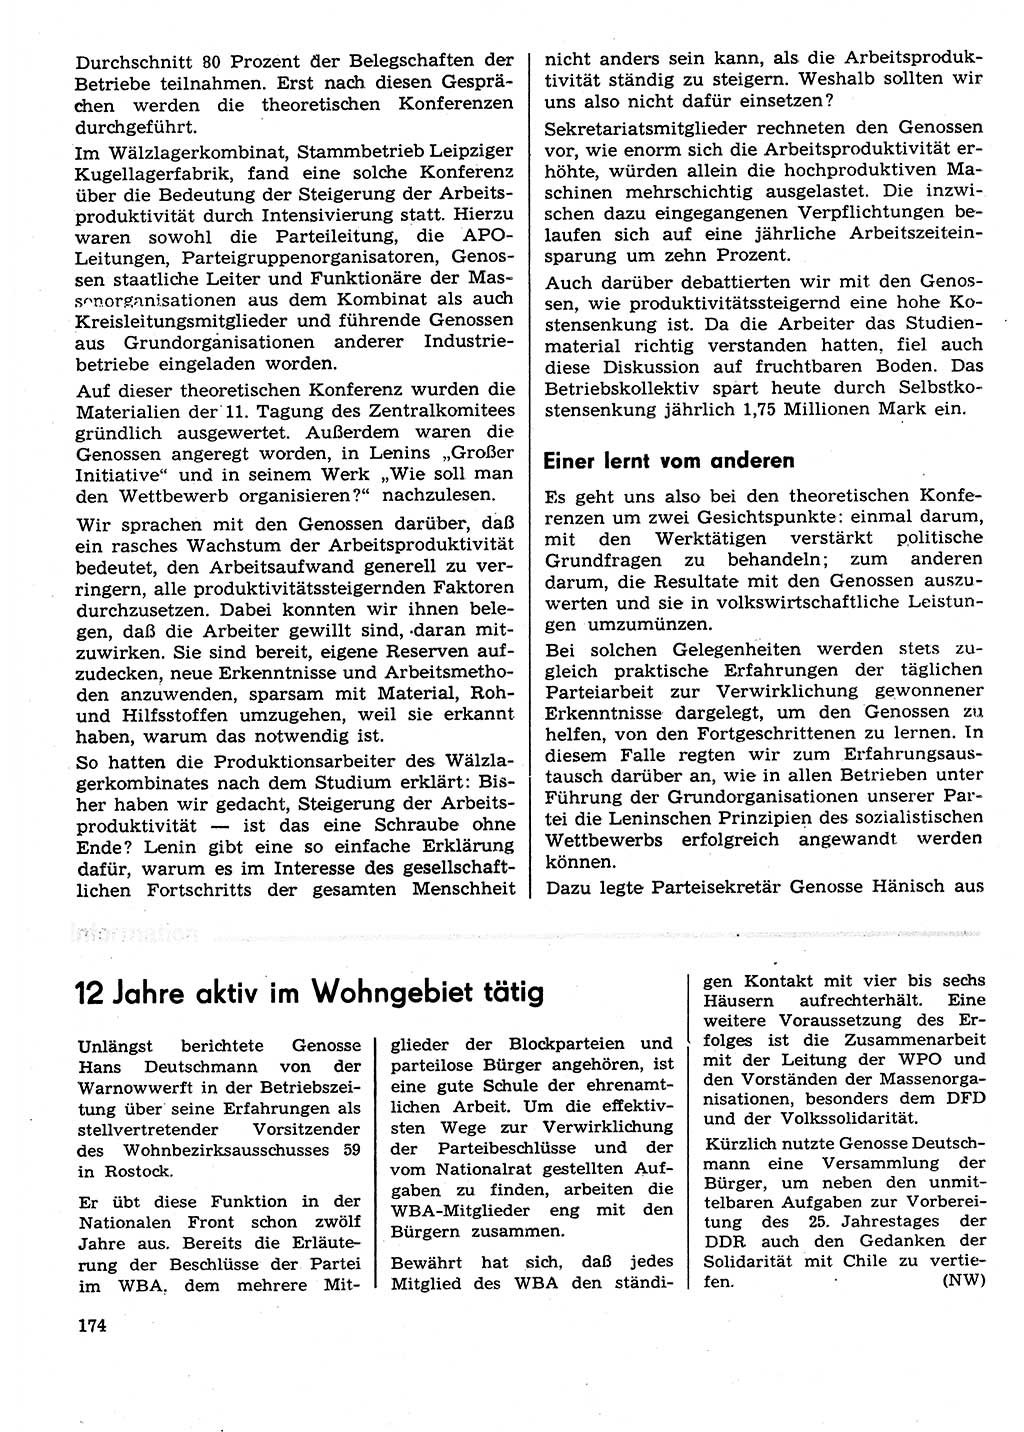 Neuer Weg (NW), Organ des Zentralkomitees (ZK) der SED (Sozialistische Einheitspartei Deutschlands) für Fragen des Parteilebens, 29. Jahrgang [Deutsche Demokratische Republik (DDR)] 1974, Seite 174 (NW ZK SED DDR 1974, S. 174)